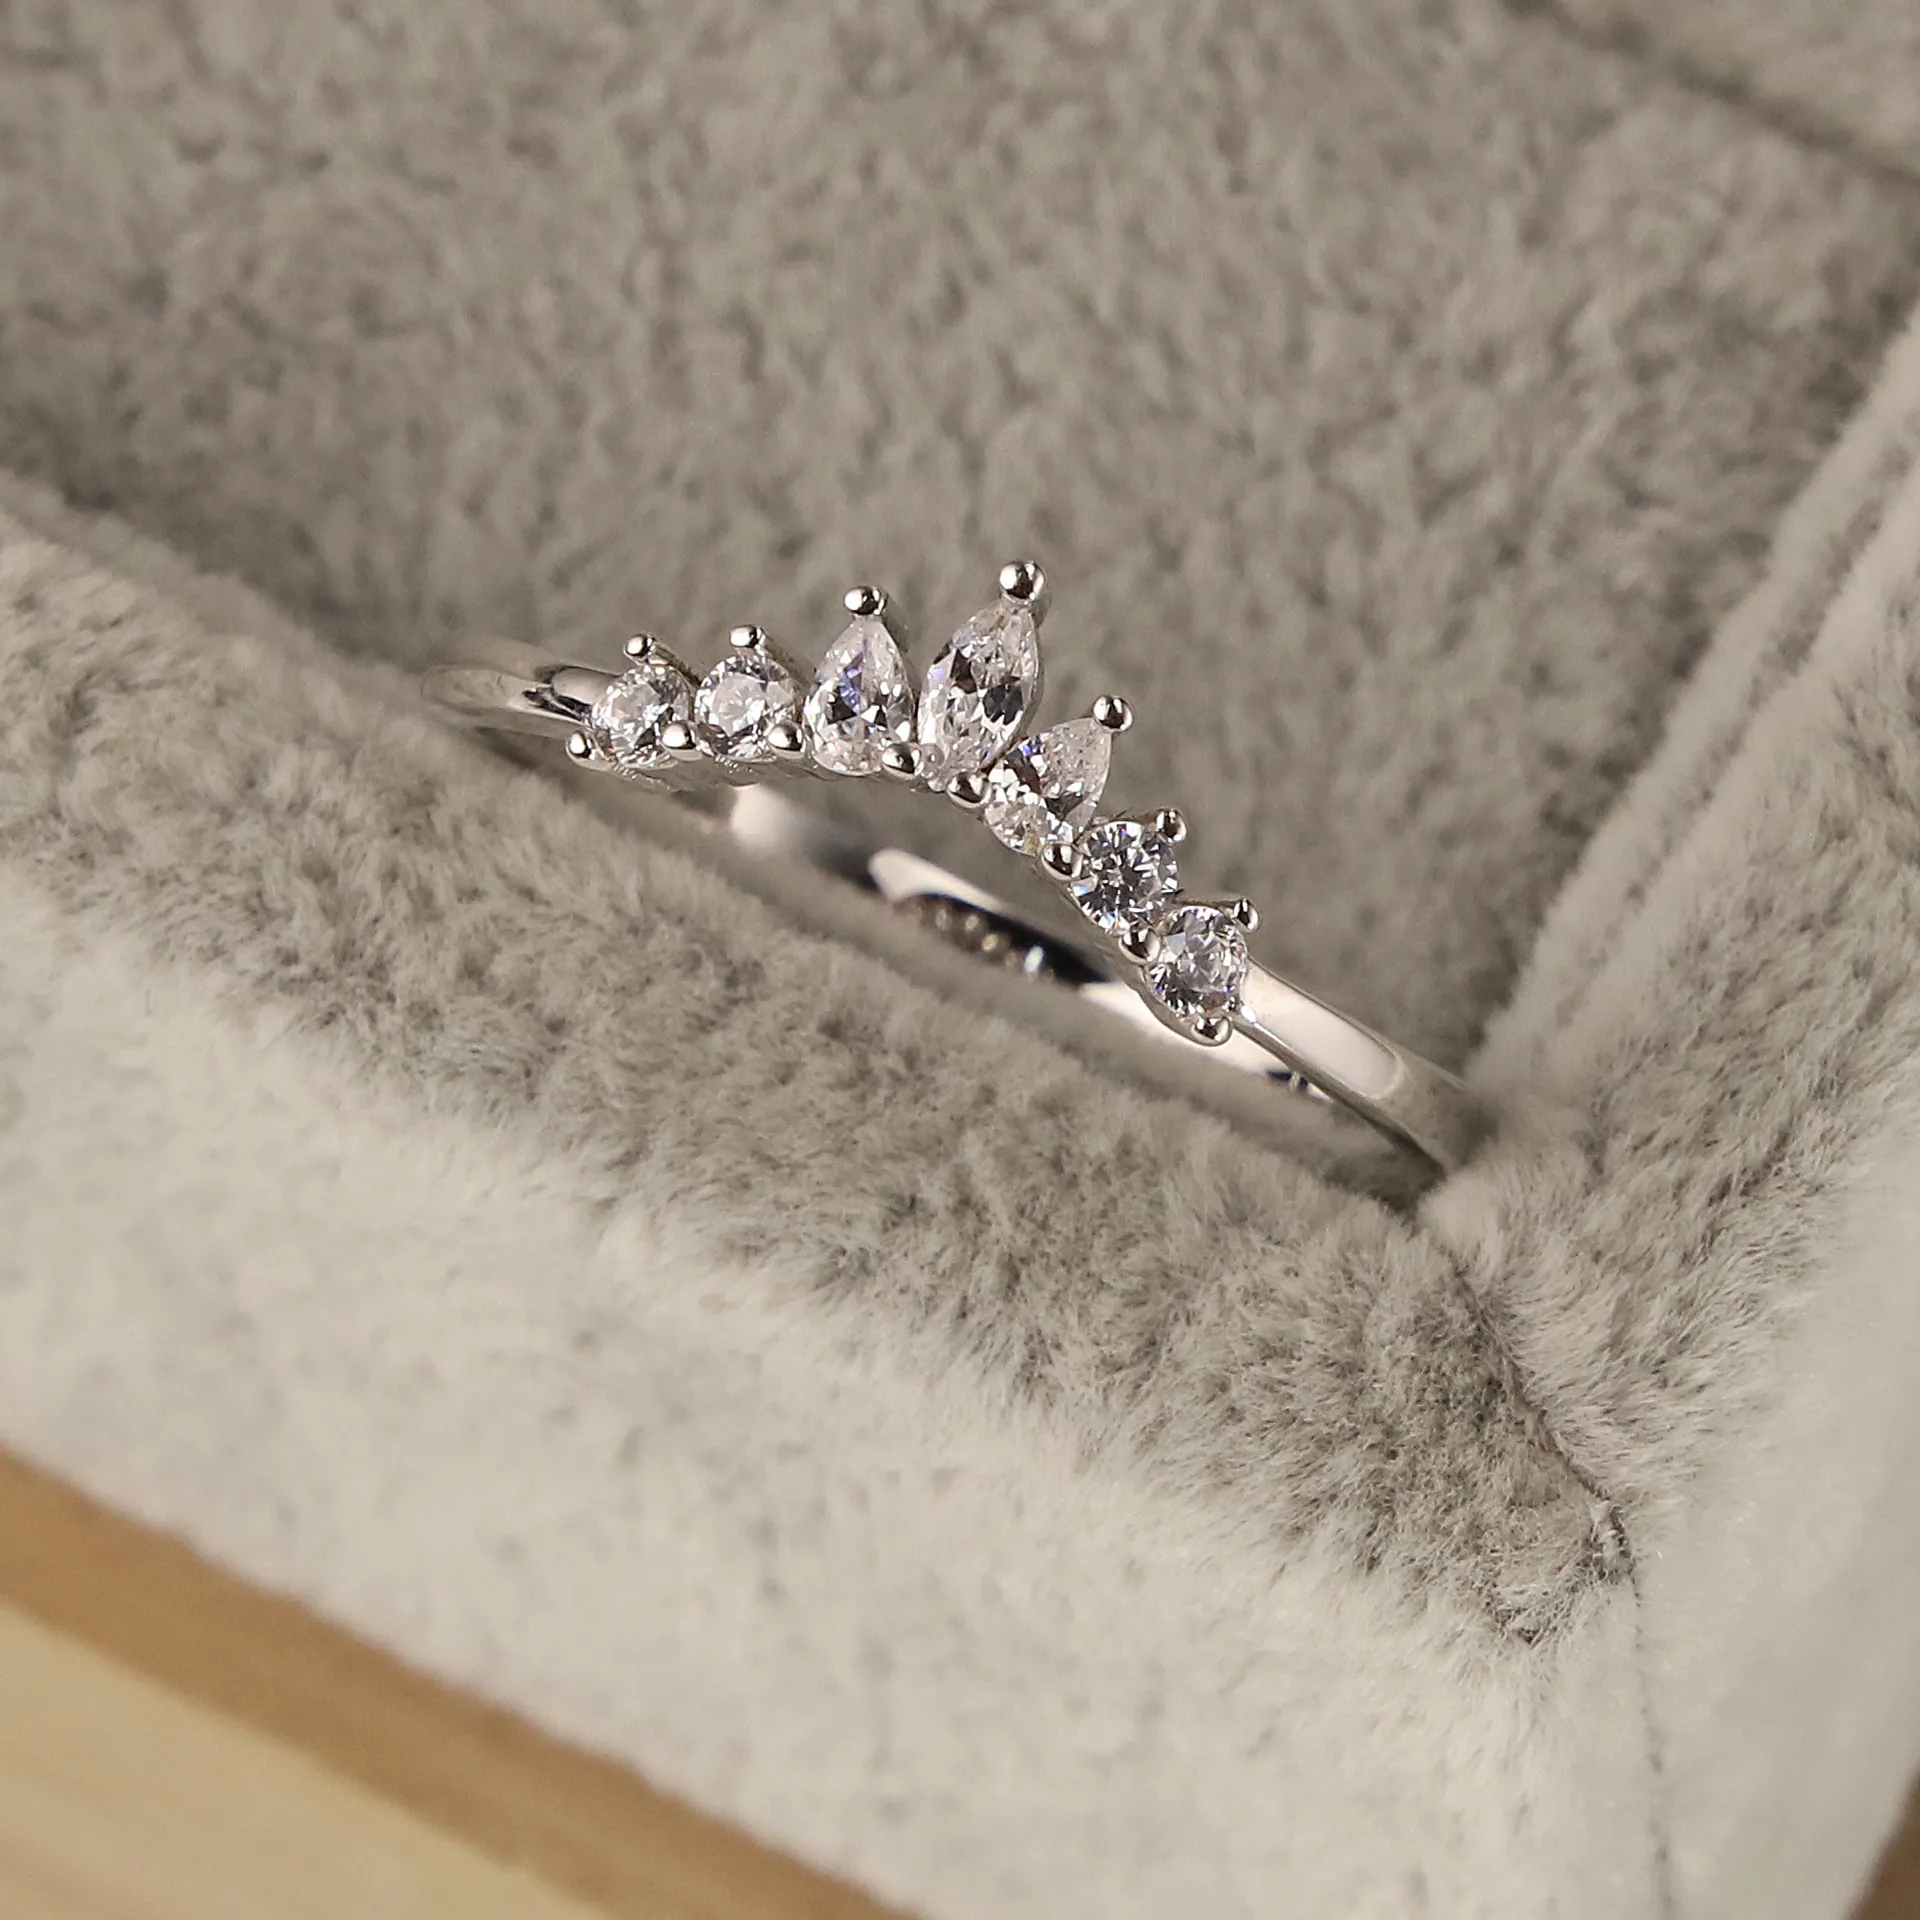 S925 Серебряное серебро простое кольцо маленькое принцесса корона кольцо сень маленькое свежее кольцо кольцо личности личности